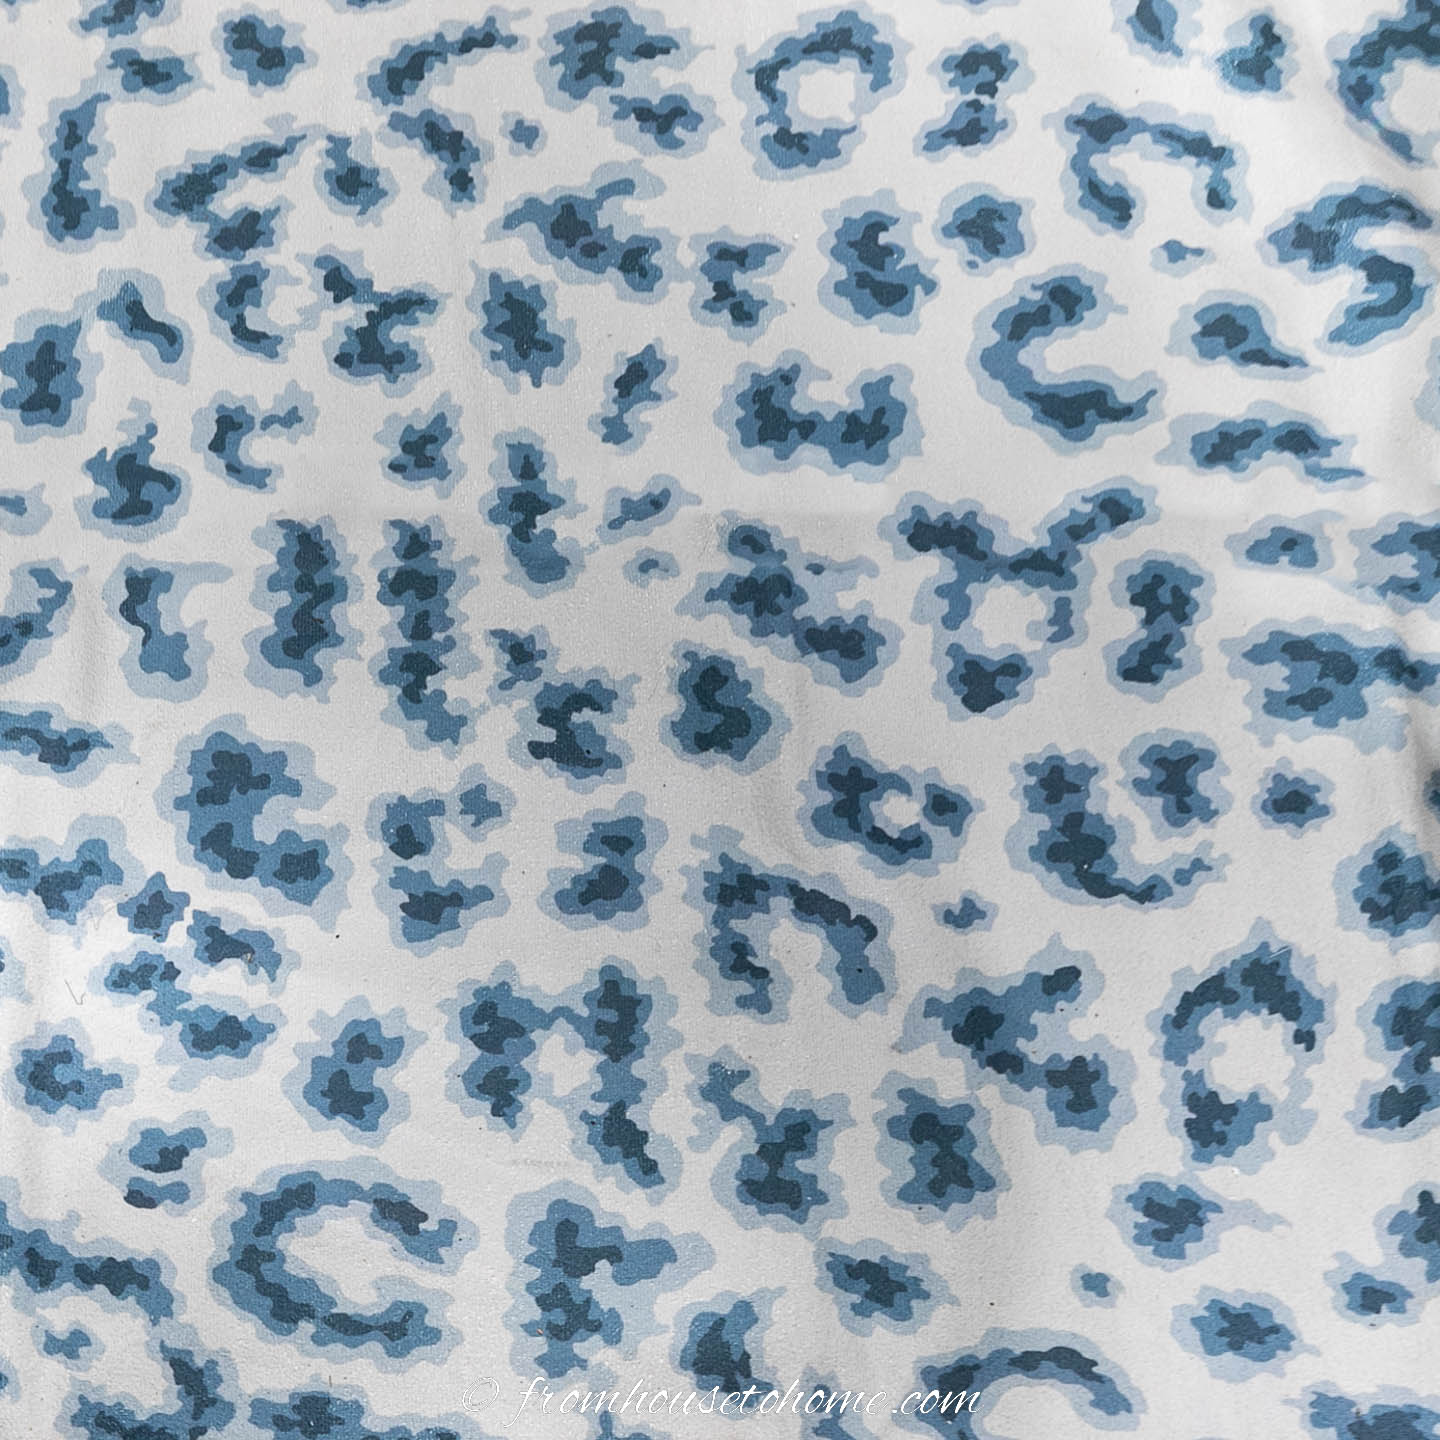 Blue and white cheetah print area rug